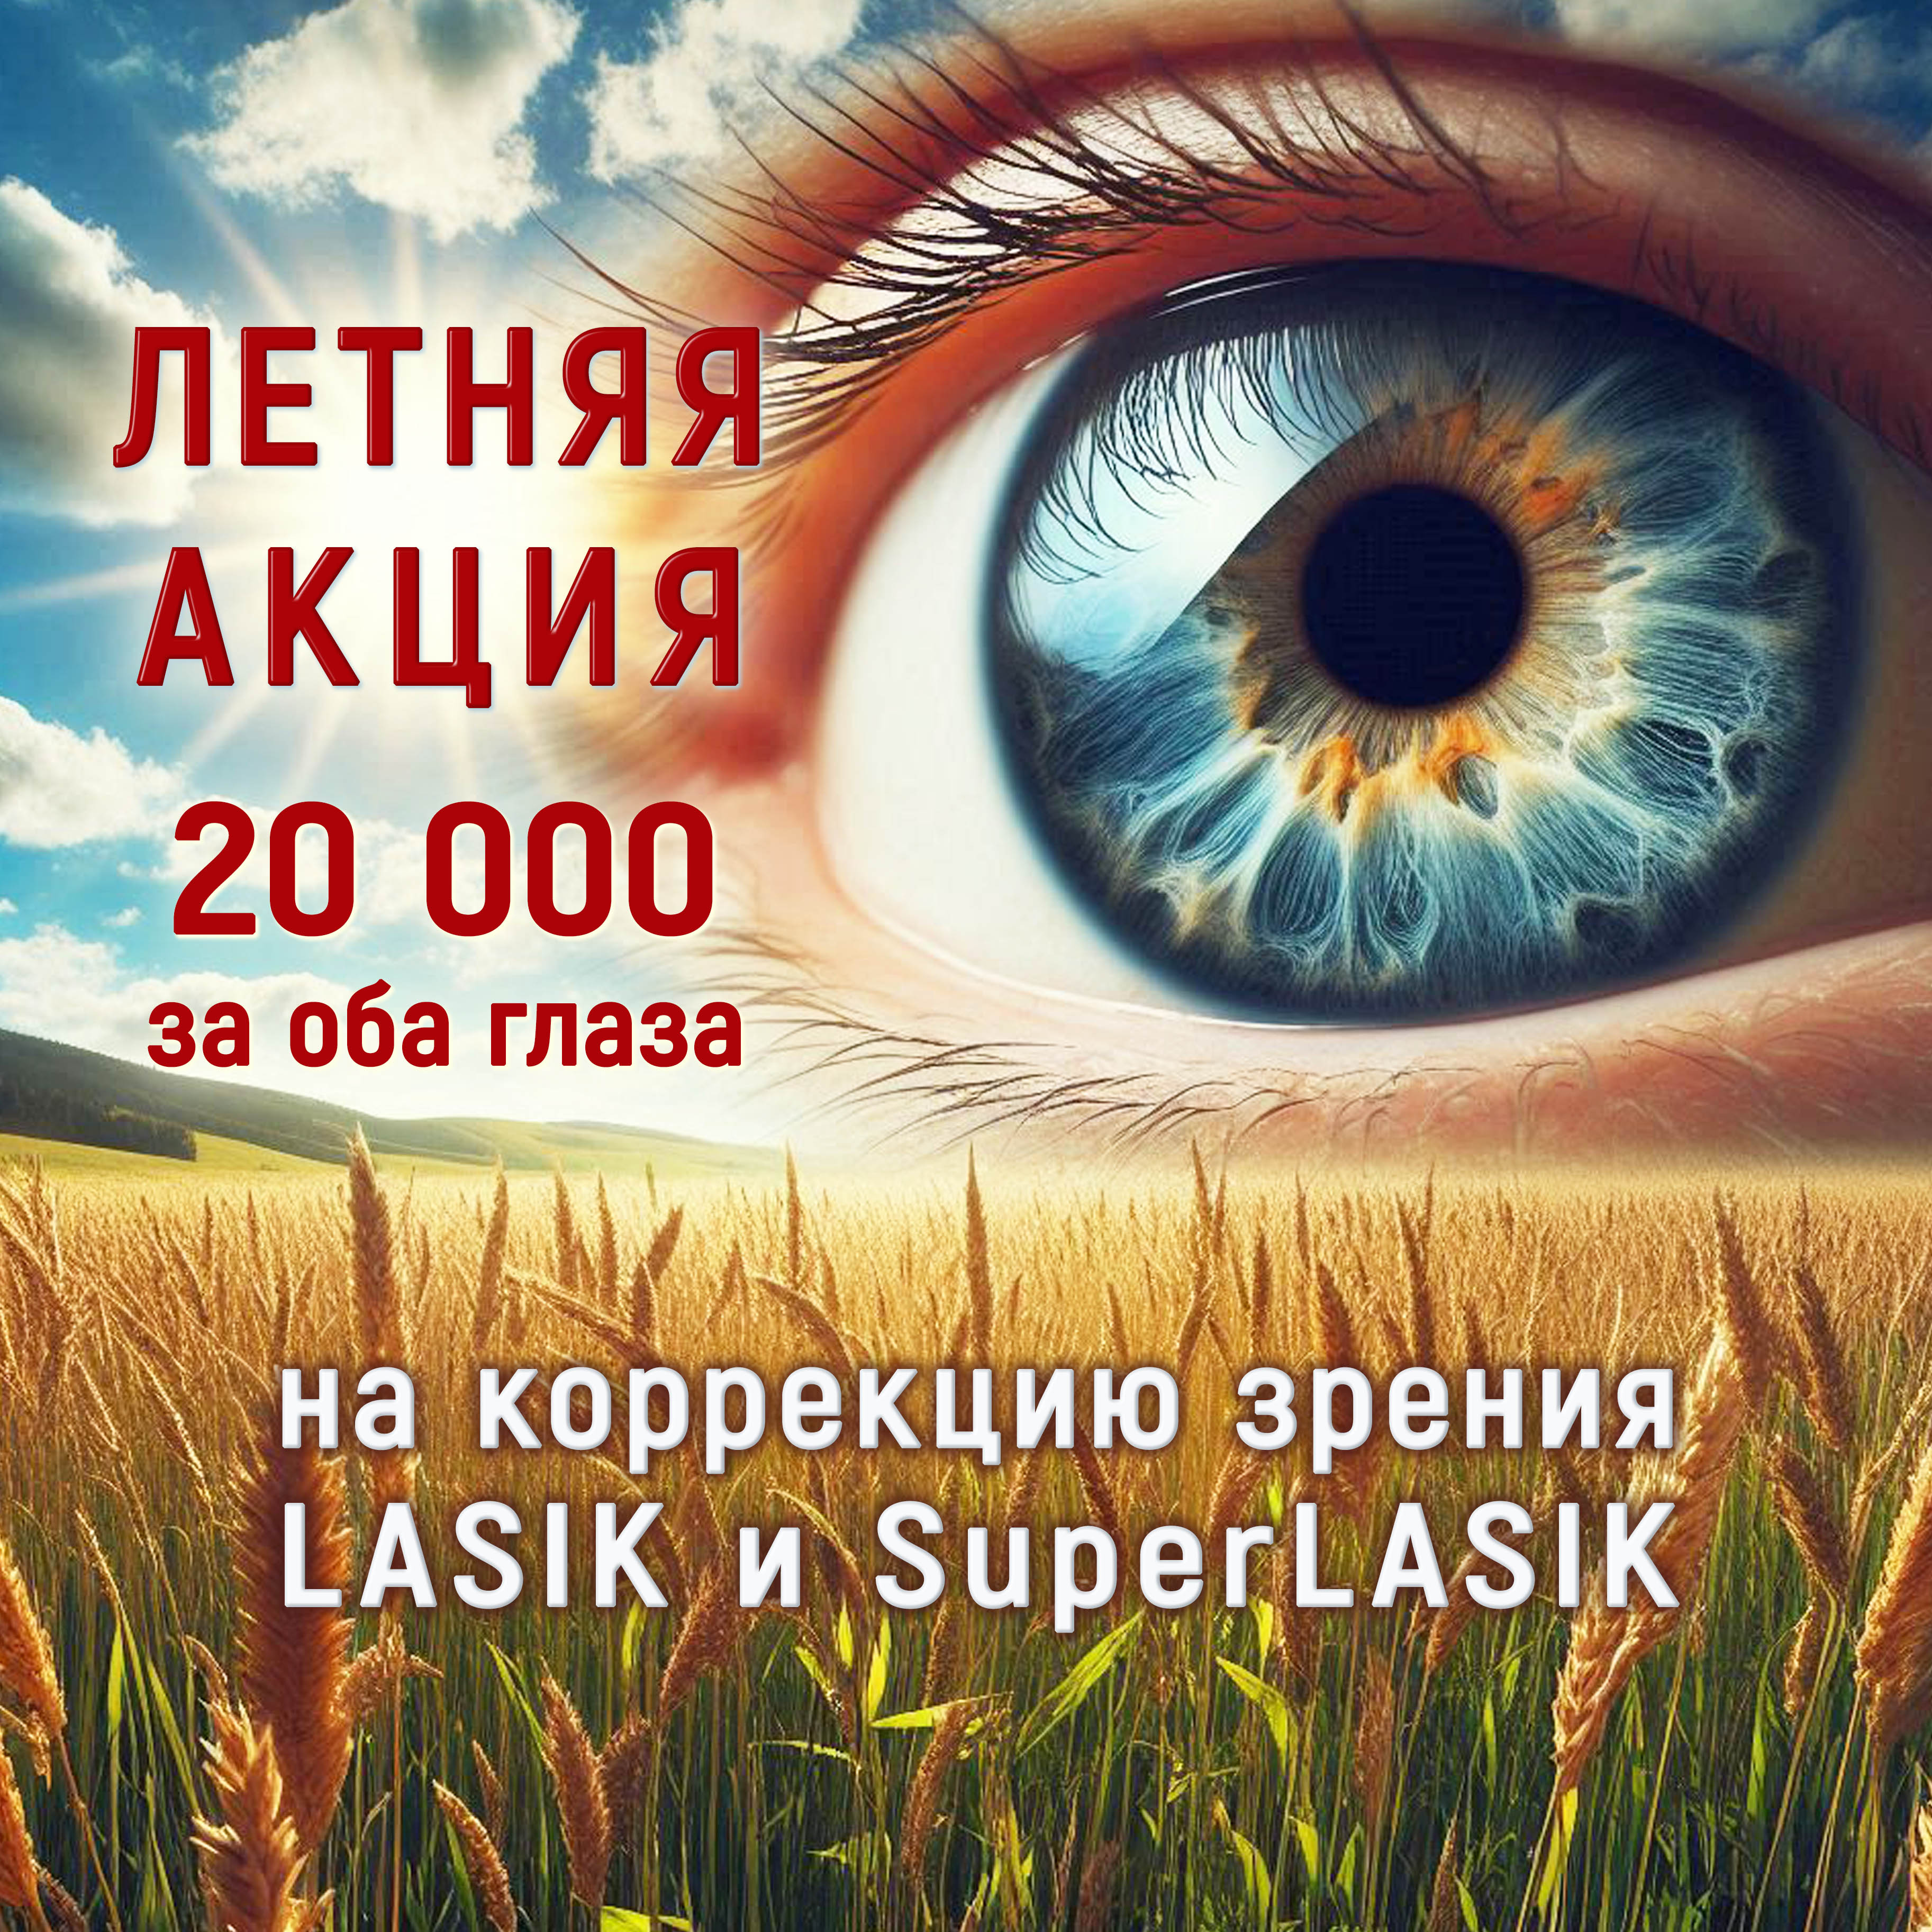 АКЦИЯ! С 1 июня Коррекция зрения по методу Super LASIK (CONTOURA® Vision) по цене LASIK 20 000 руб за оба глаза